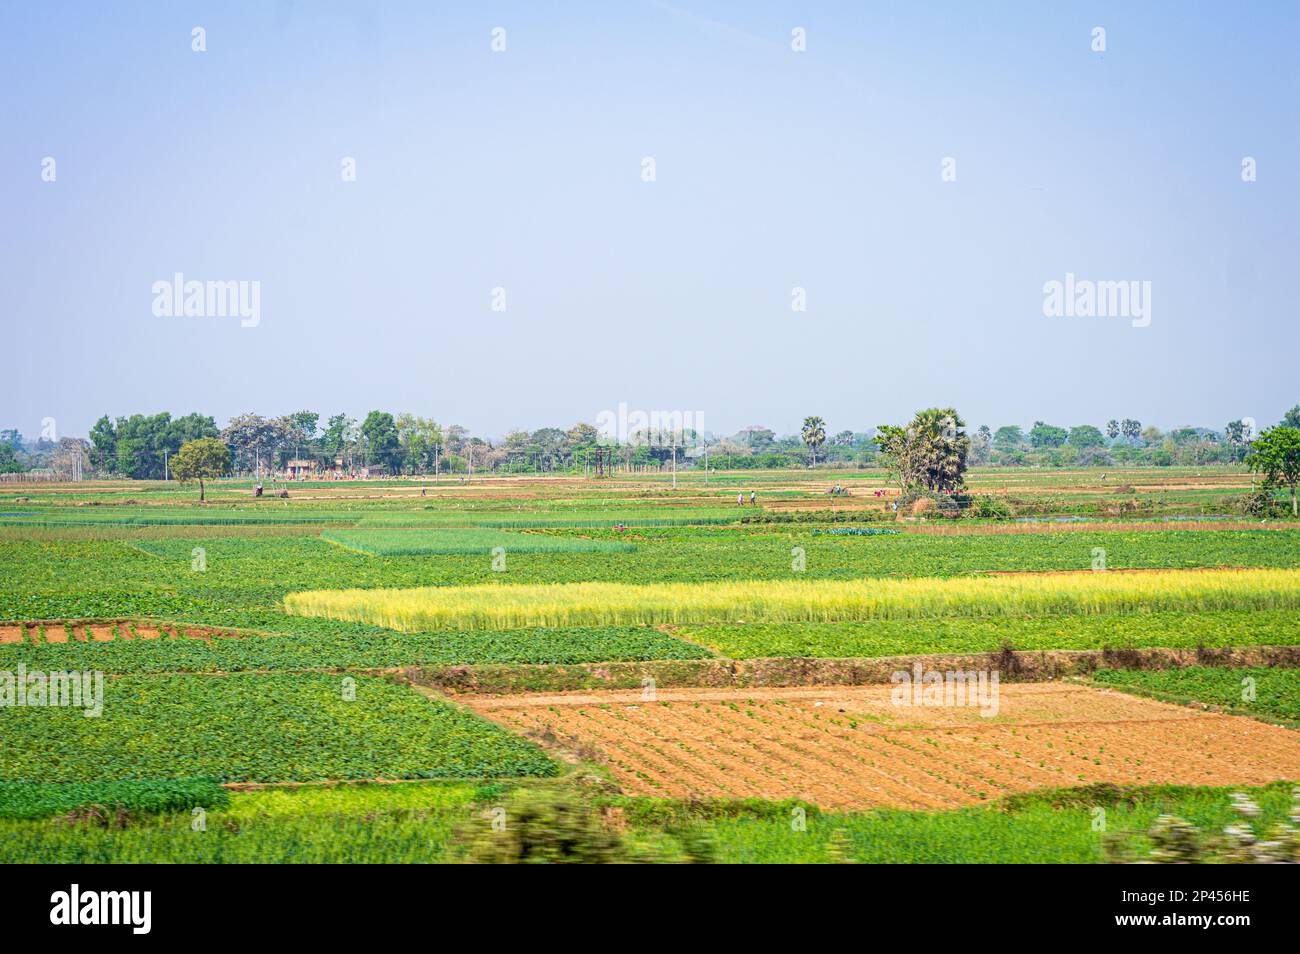 Grüne Landwirtschaftslandschaft vor blauem Himmel im Hintergrund. Ländliche Indische Landschaft. Westbengalen Indien Südasiatisch-Pazifischer Raum Stockfoto